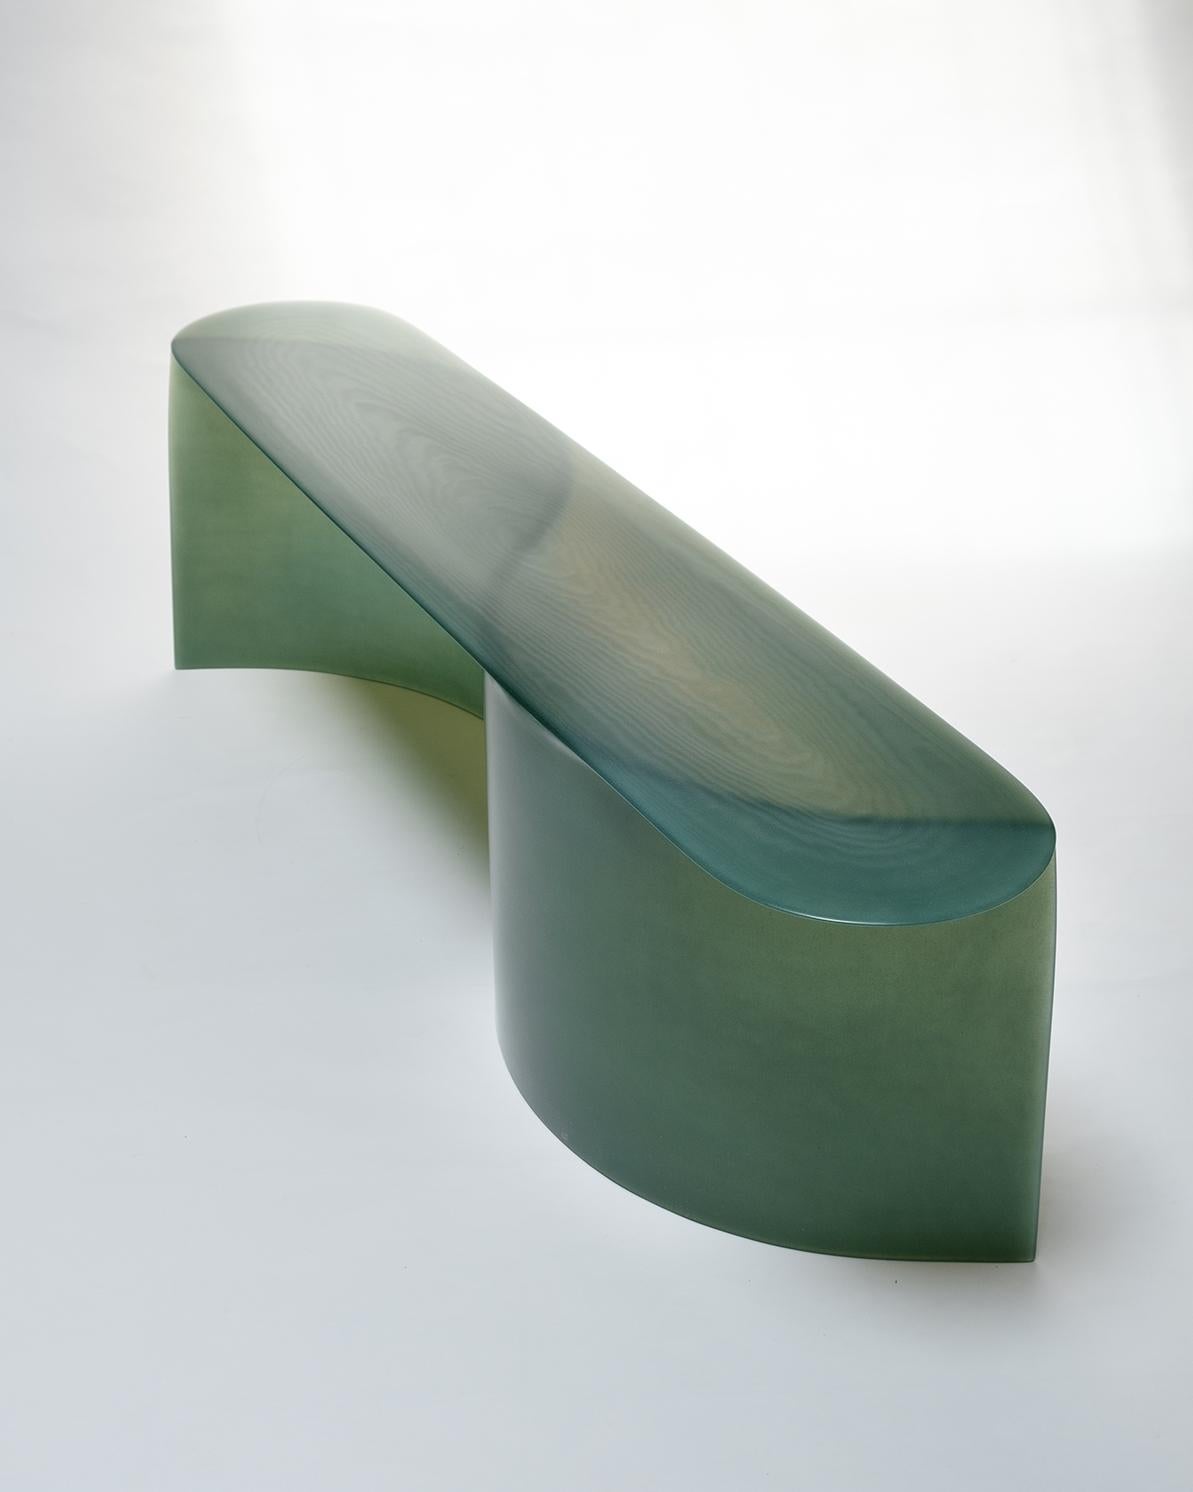 Dutch Contemporary Fiberglass New Wave Bench, by Lukas Cober